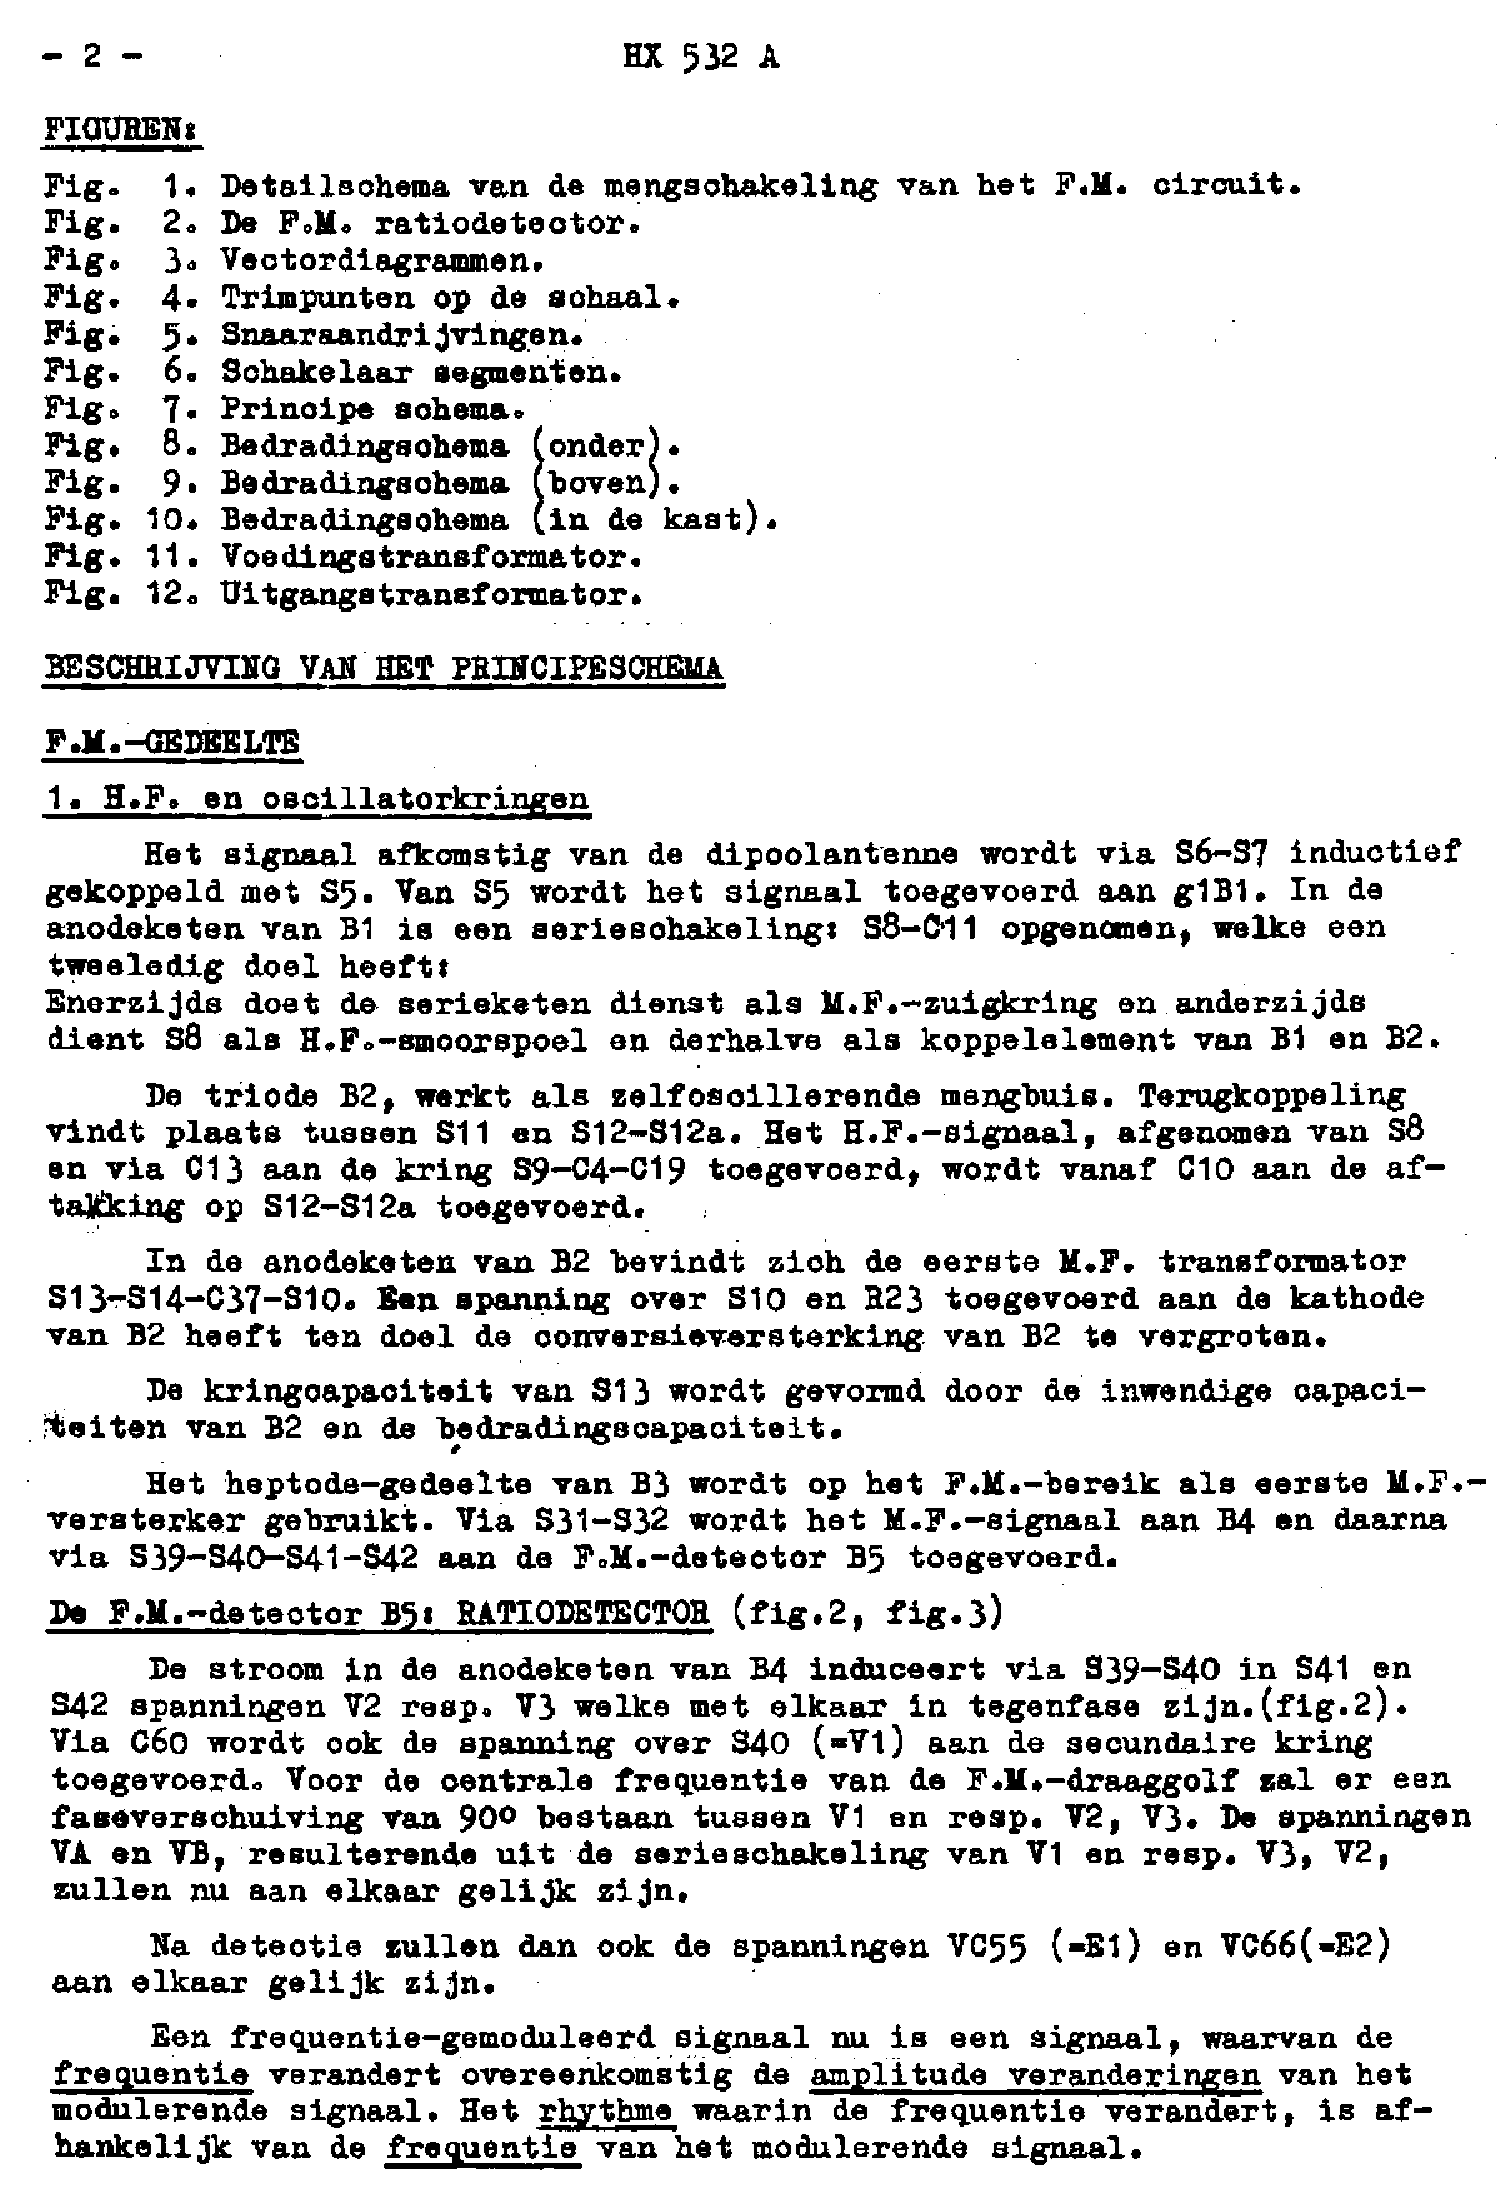 PHILIPS HX532A AM-FM RADIO-GRAMO 1953 SM service manual (2nd page)